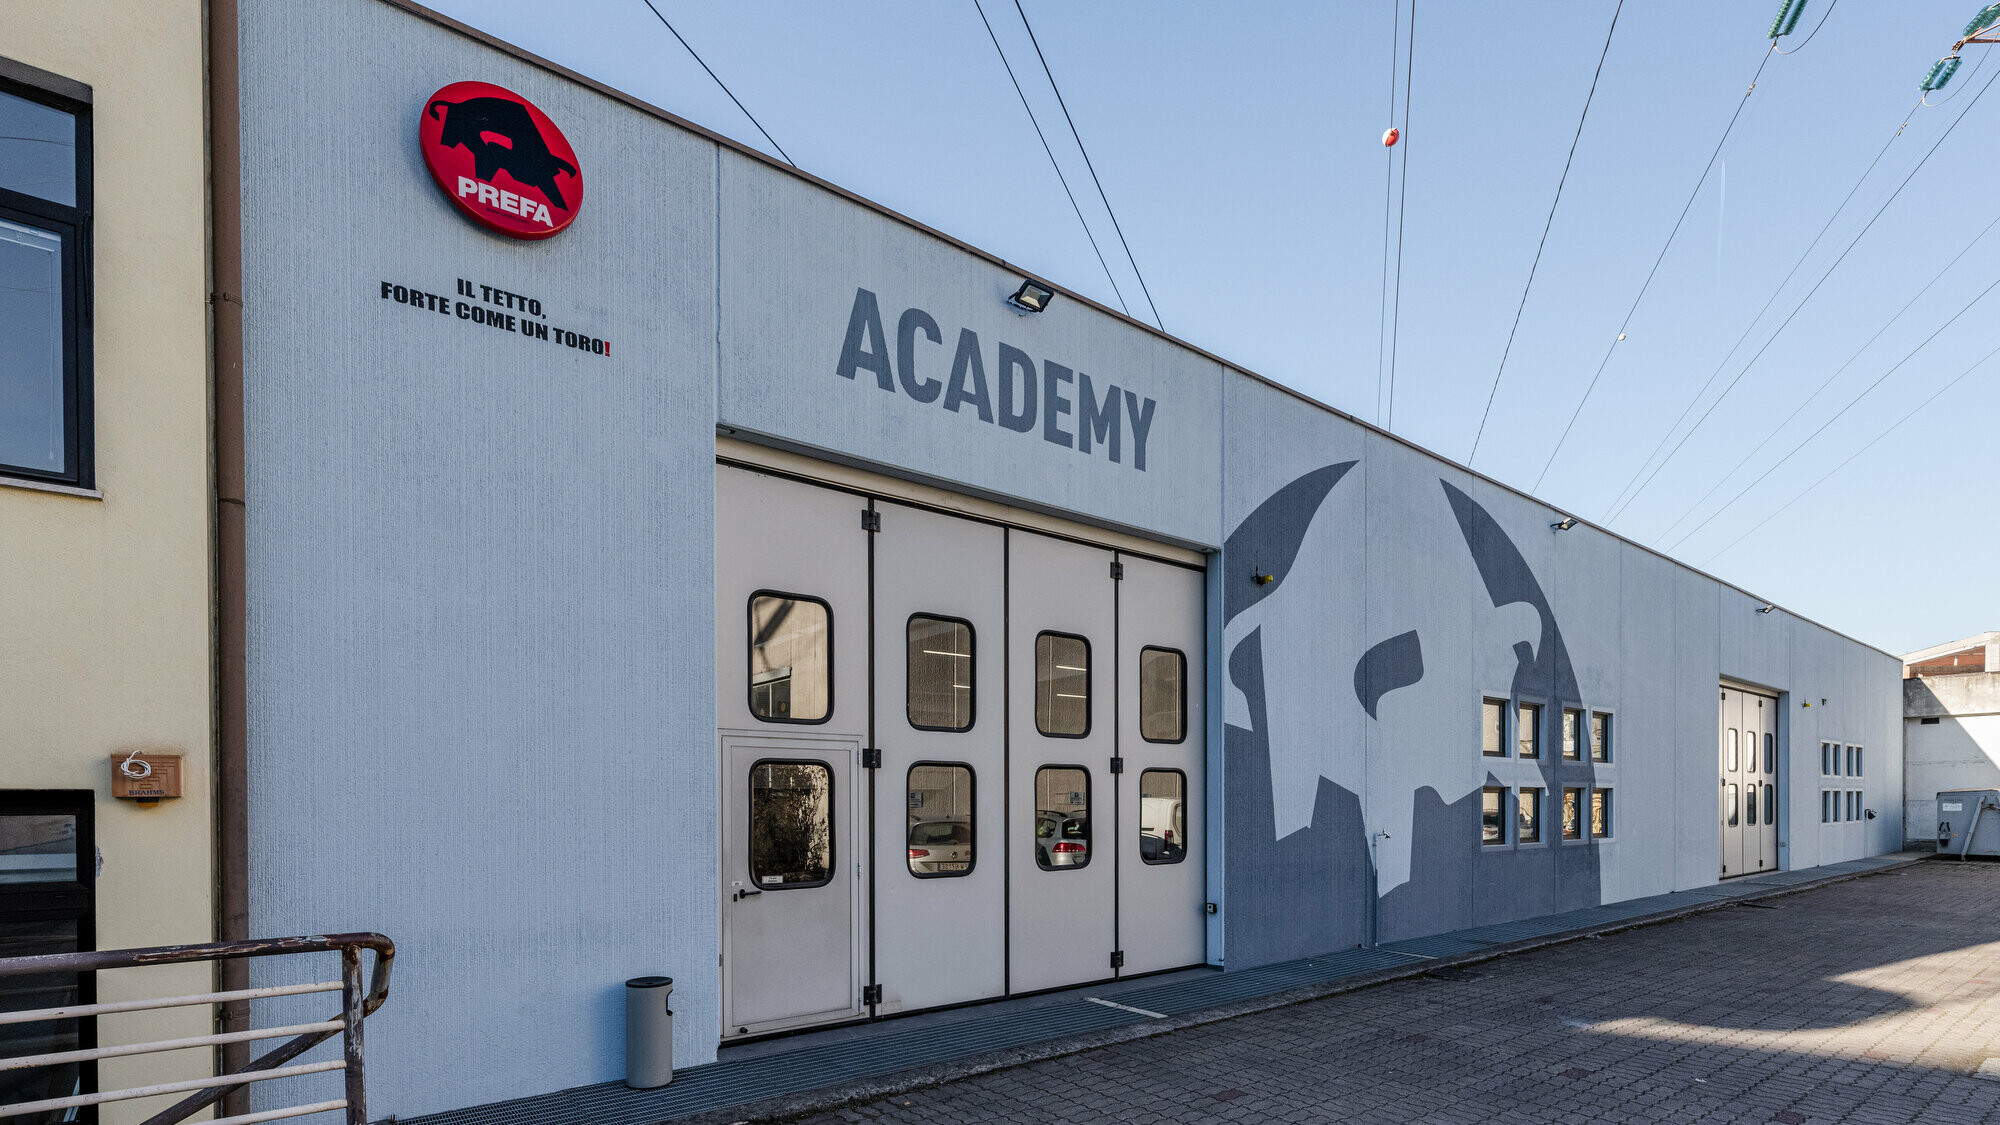 Fassade der PREFA Academy in Bozen mit dem Stier-Logo von PREFA in den Farben Grau und Weiß.